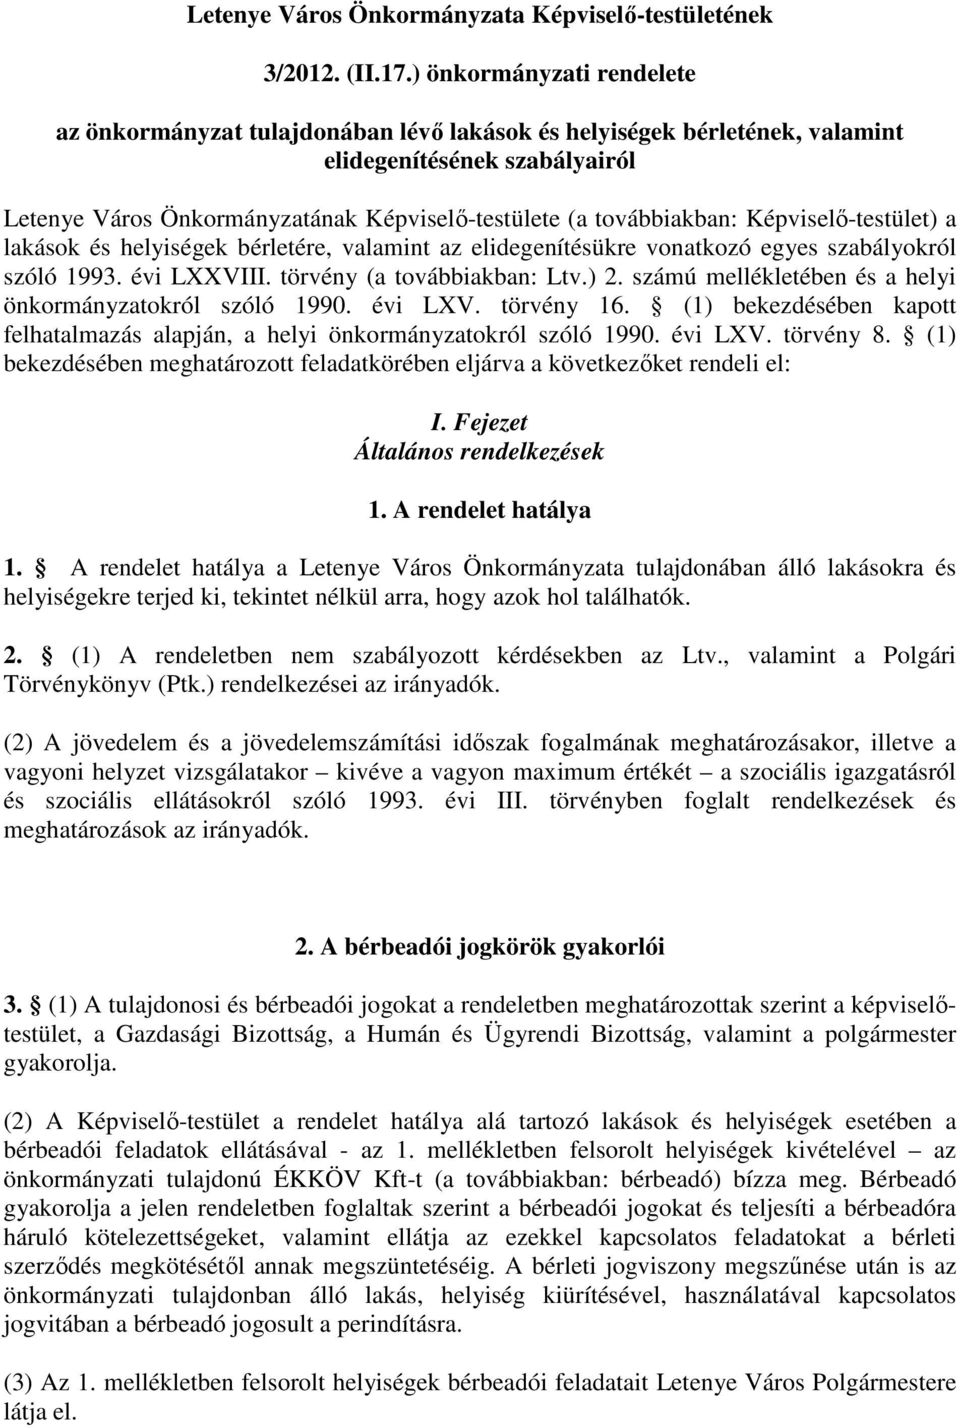 továbbiakban: Képviselı-testület) a lakások és helyiségek bérletére, valamint az elidegenítésükre vonatkozó egyes szabályokról szóló 1993. évi LXXVIII. törvény (a továbbiakban: Ltv.) 2.